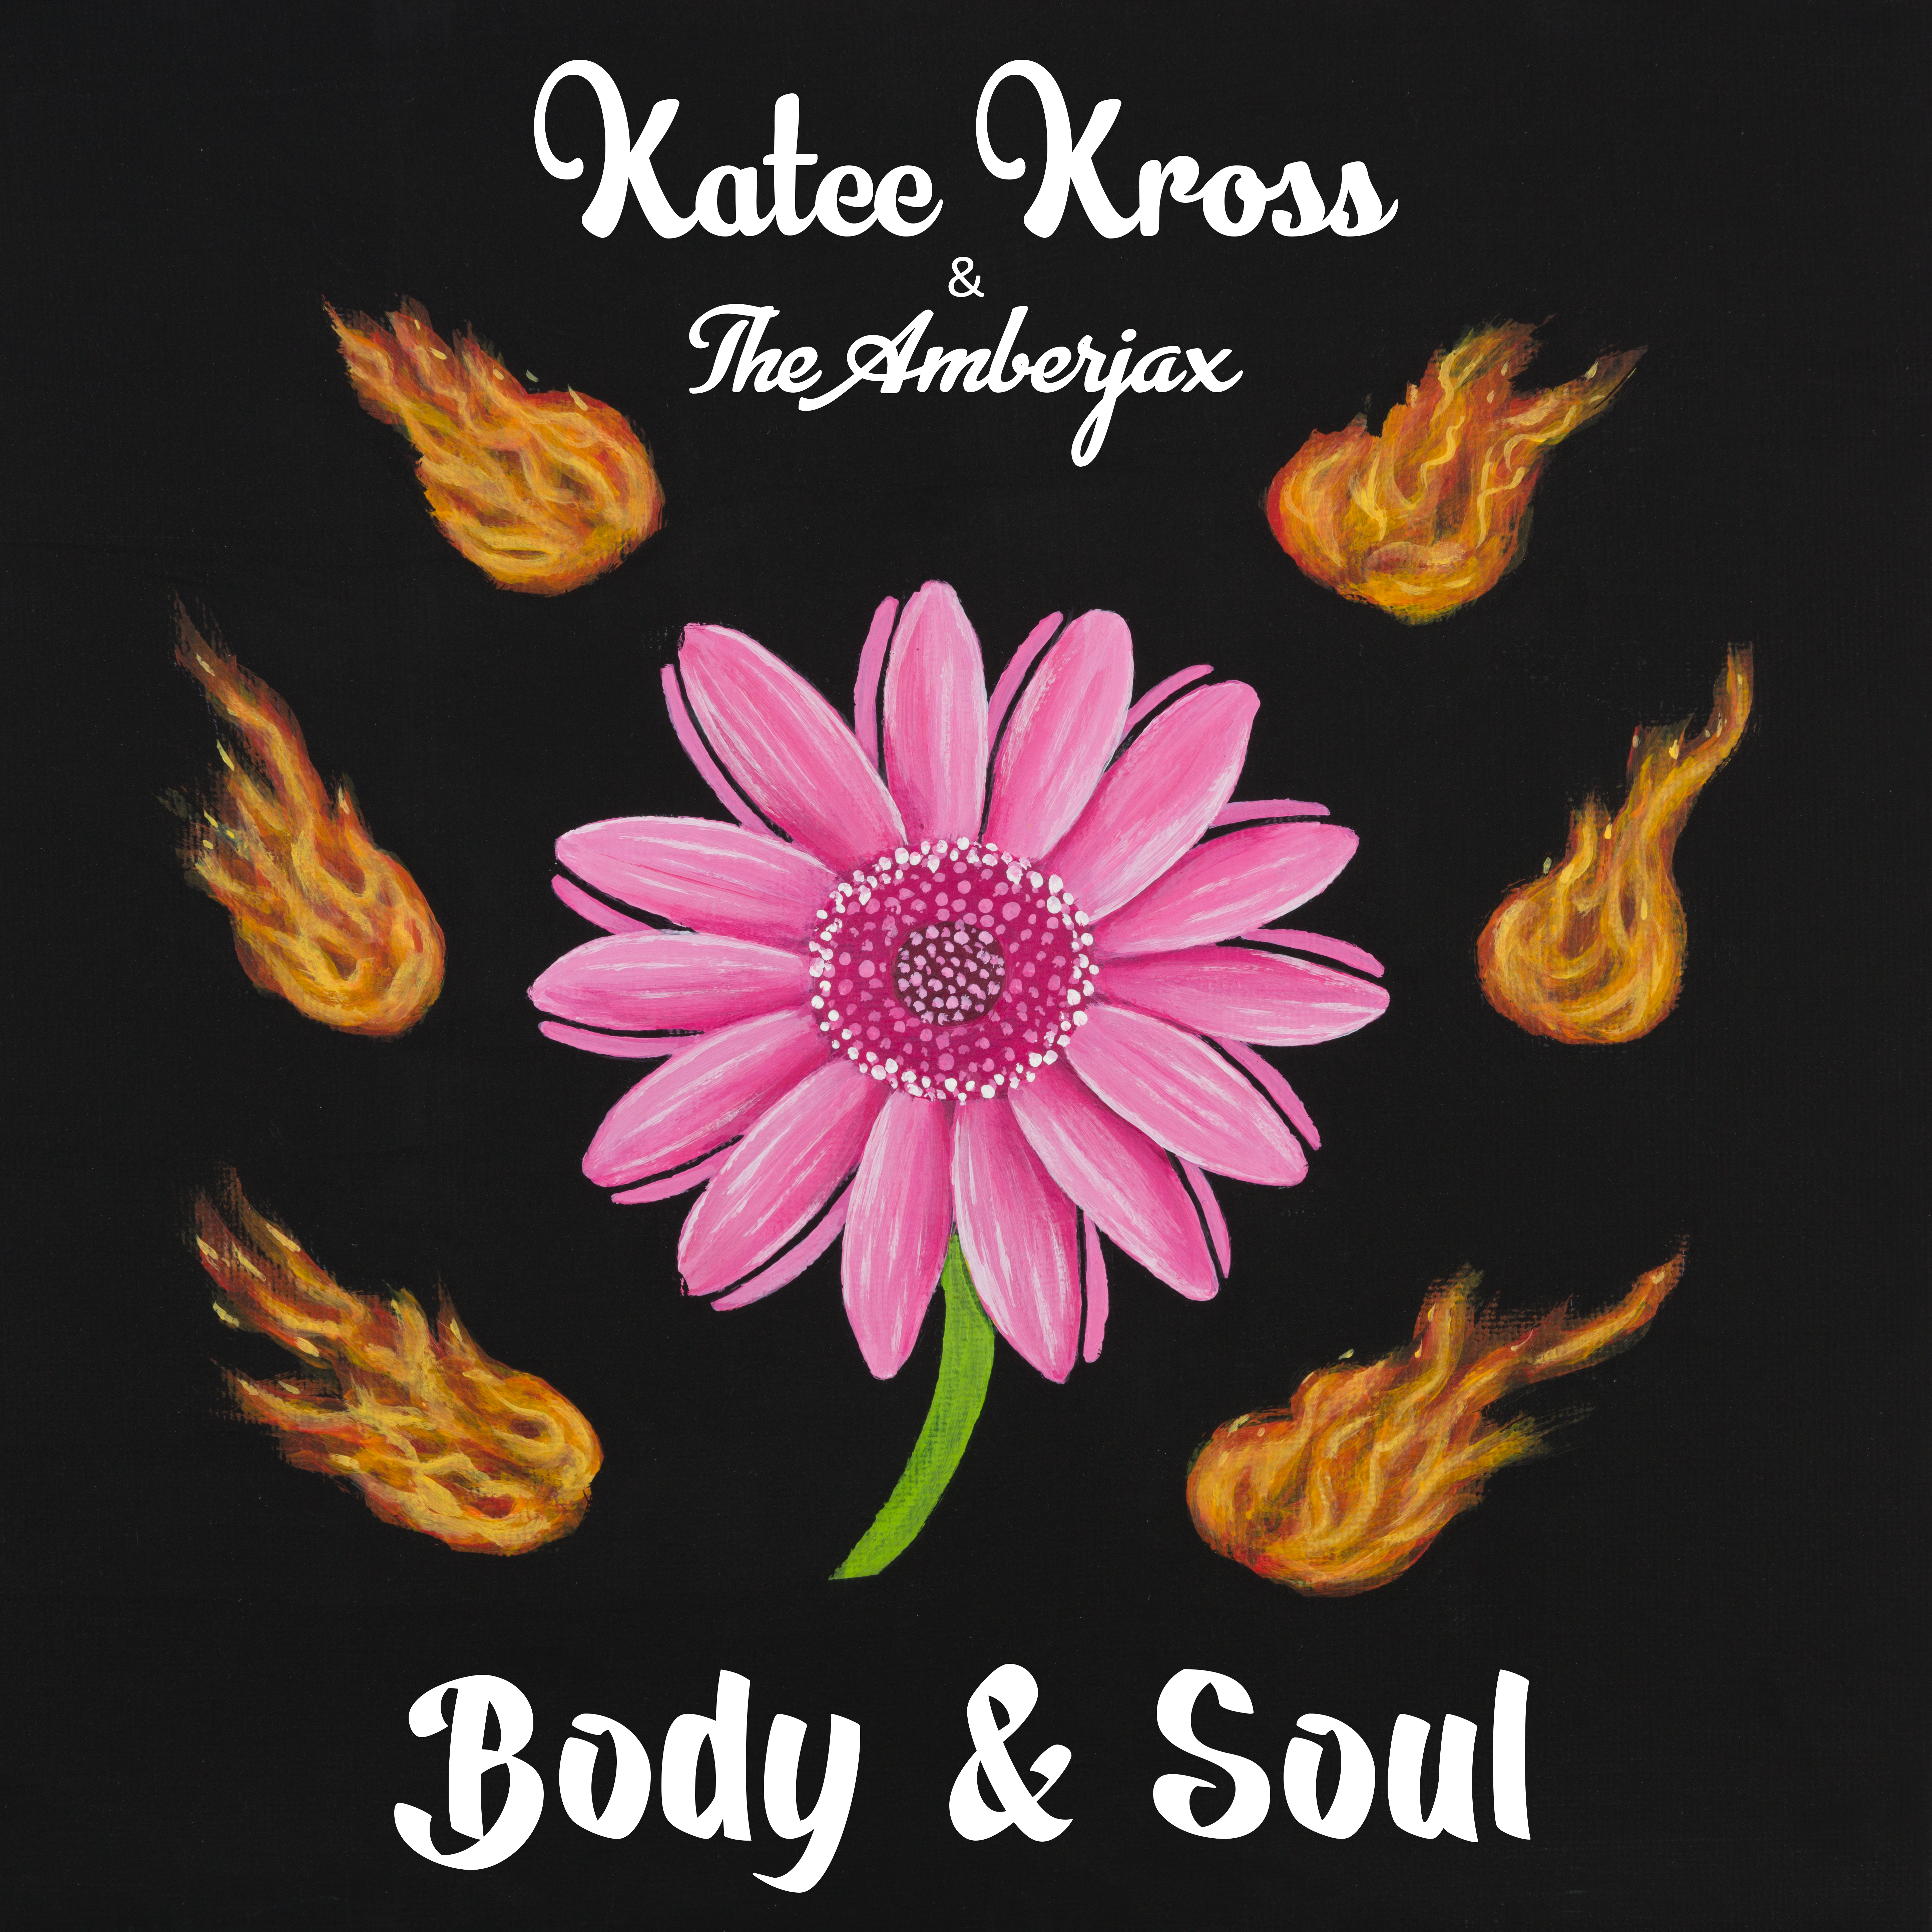 Katee Kross & The Amberjax - Body & Soul - Katee Kross & The Amberjax